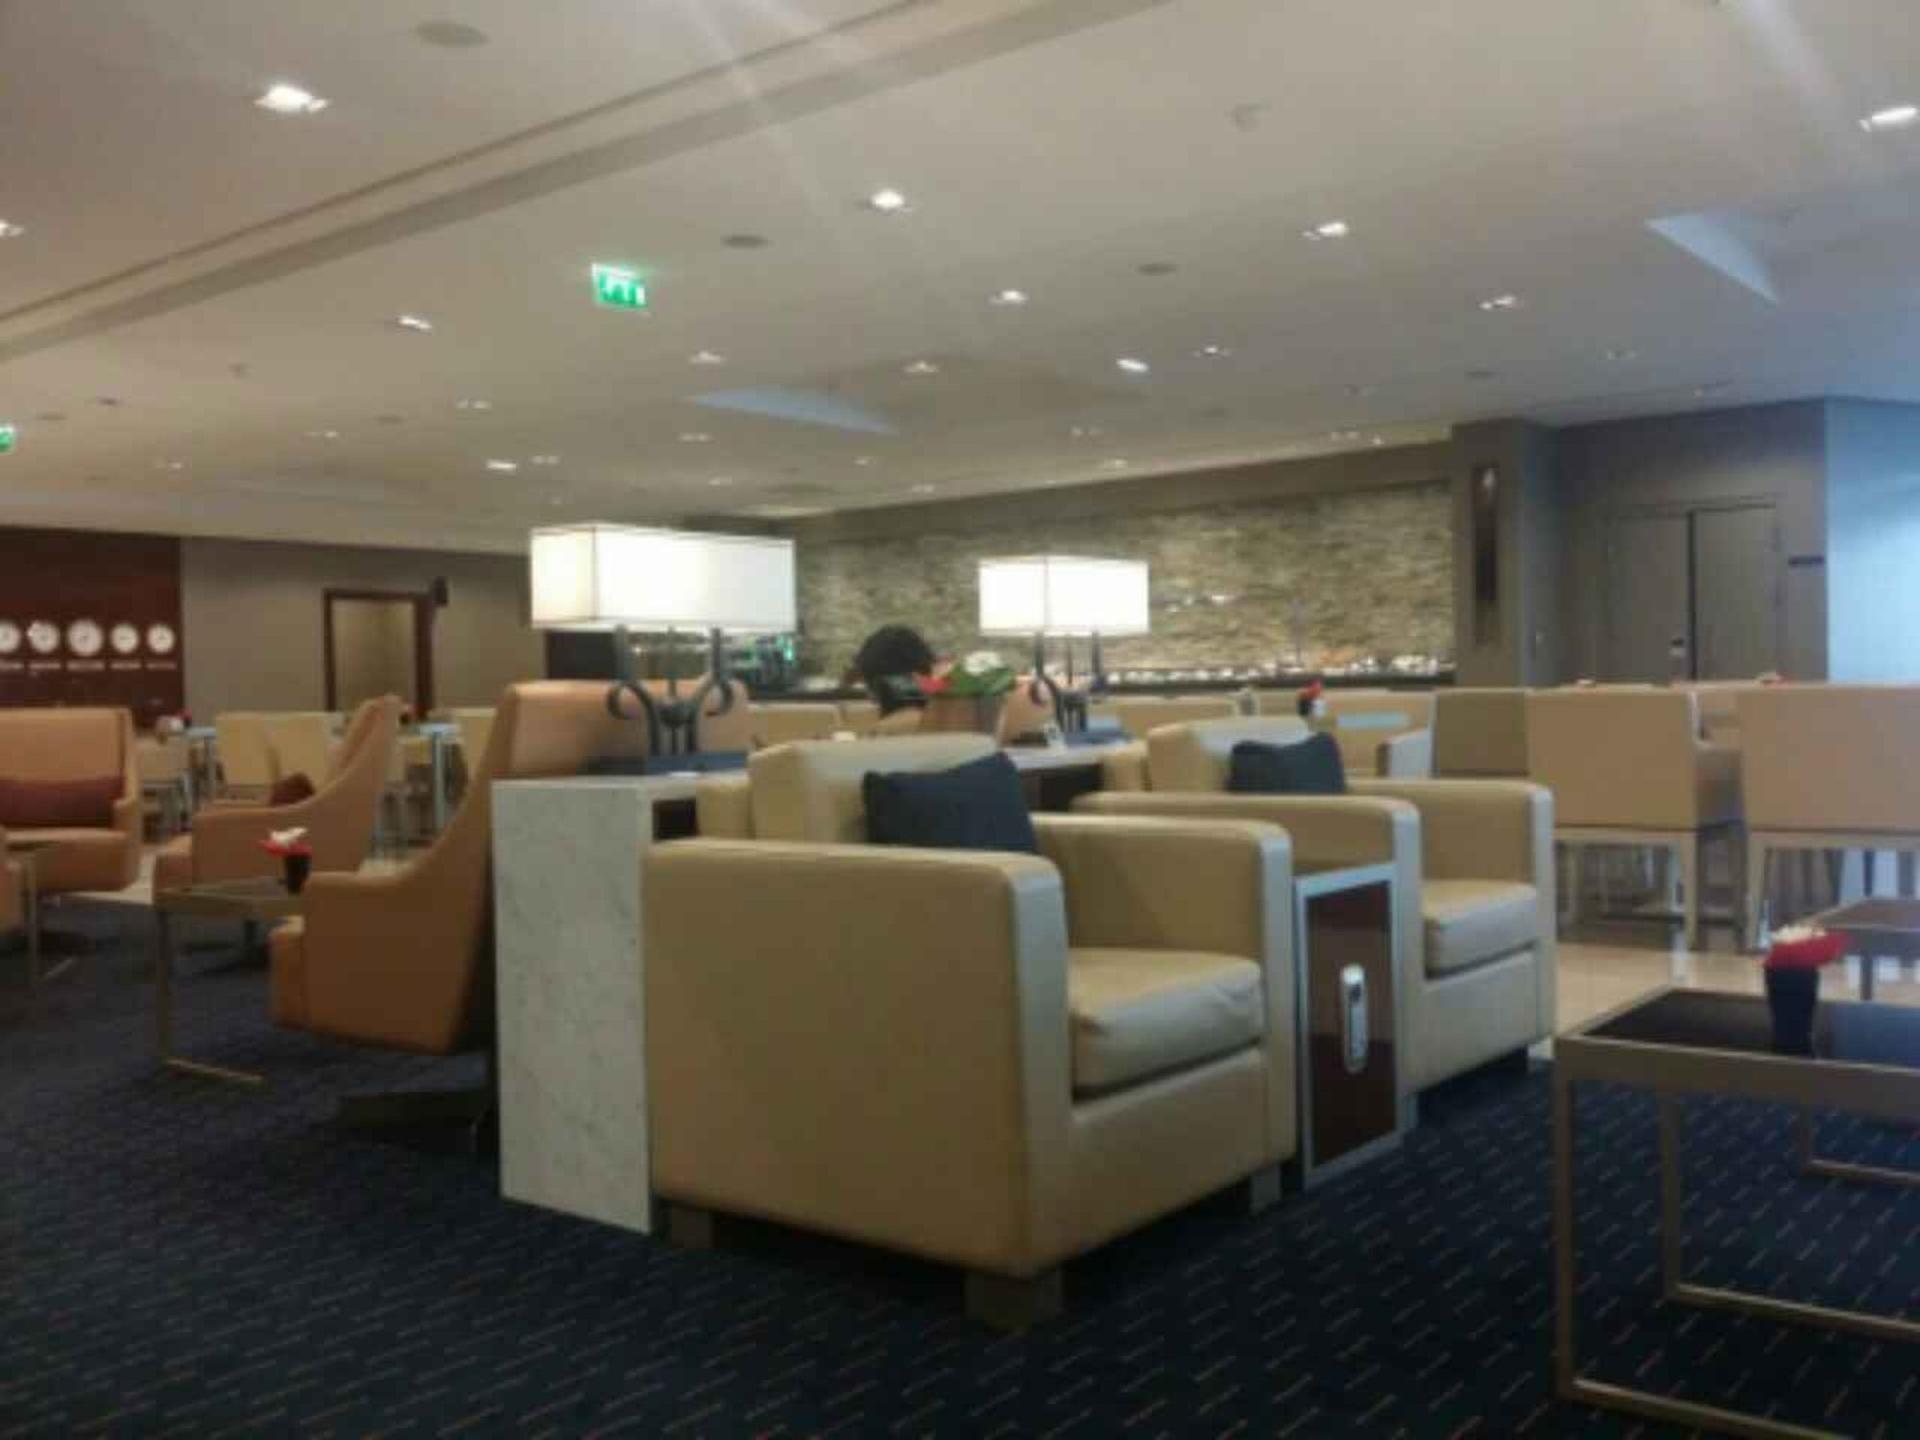 The Emirates Lounge image 5 of 9